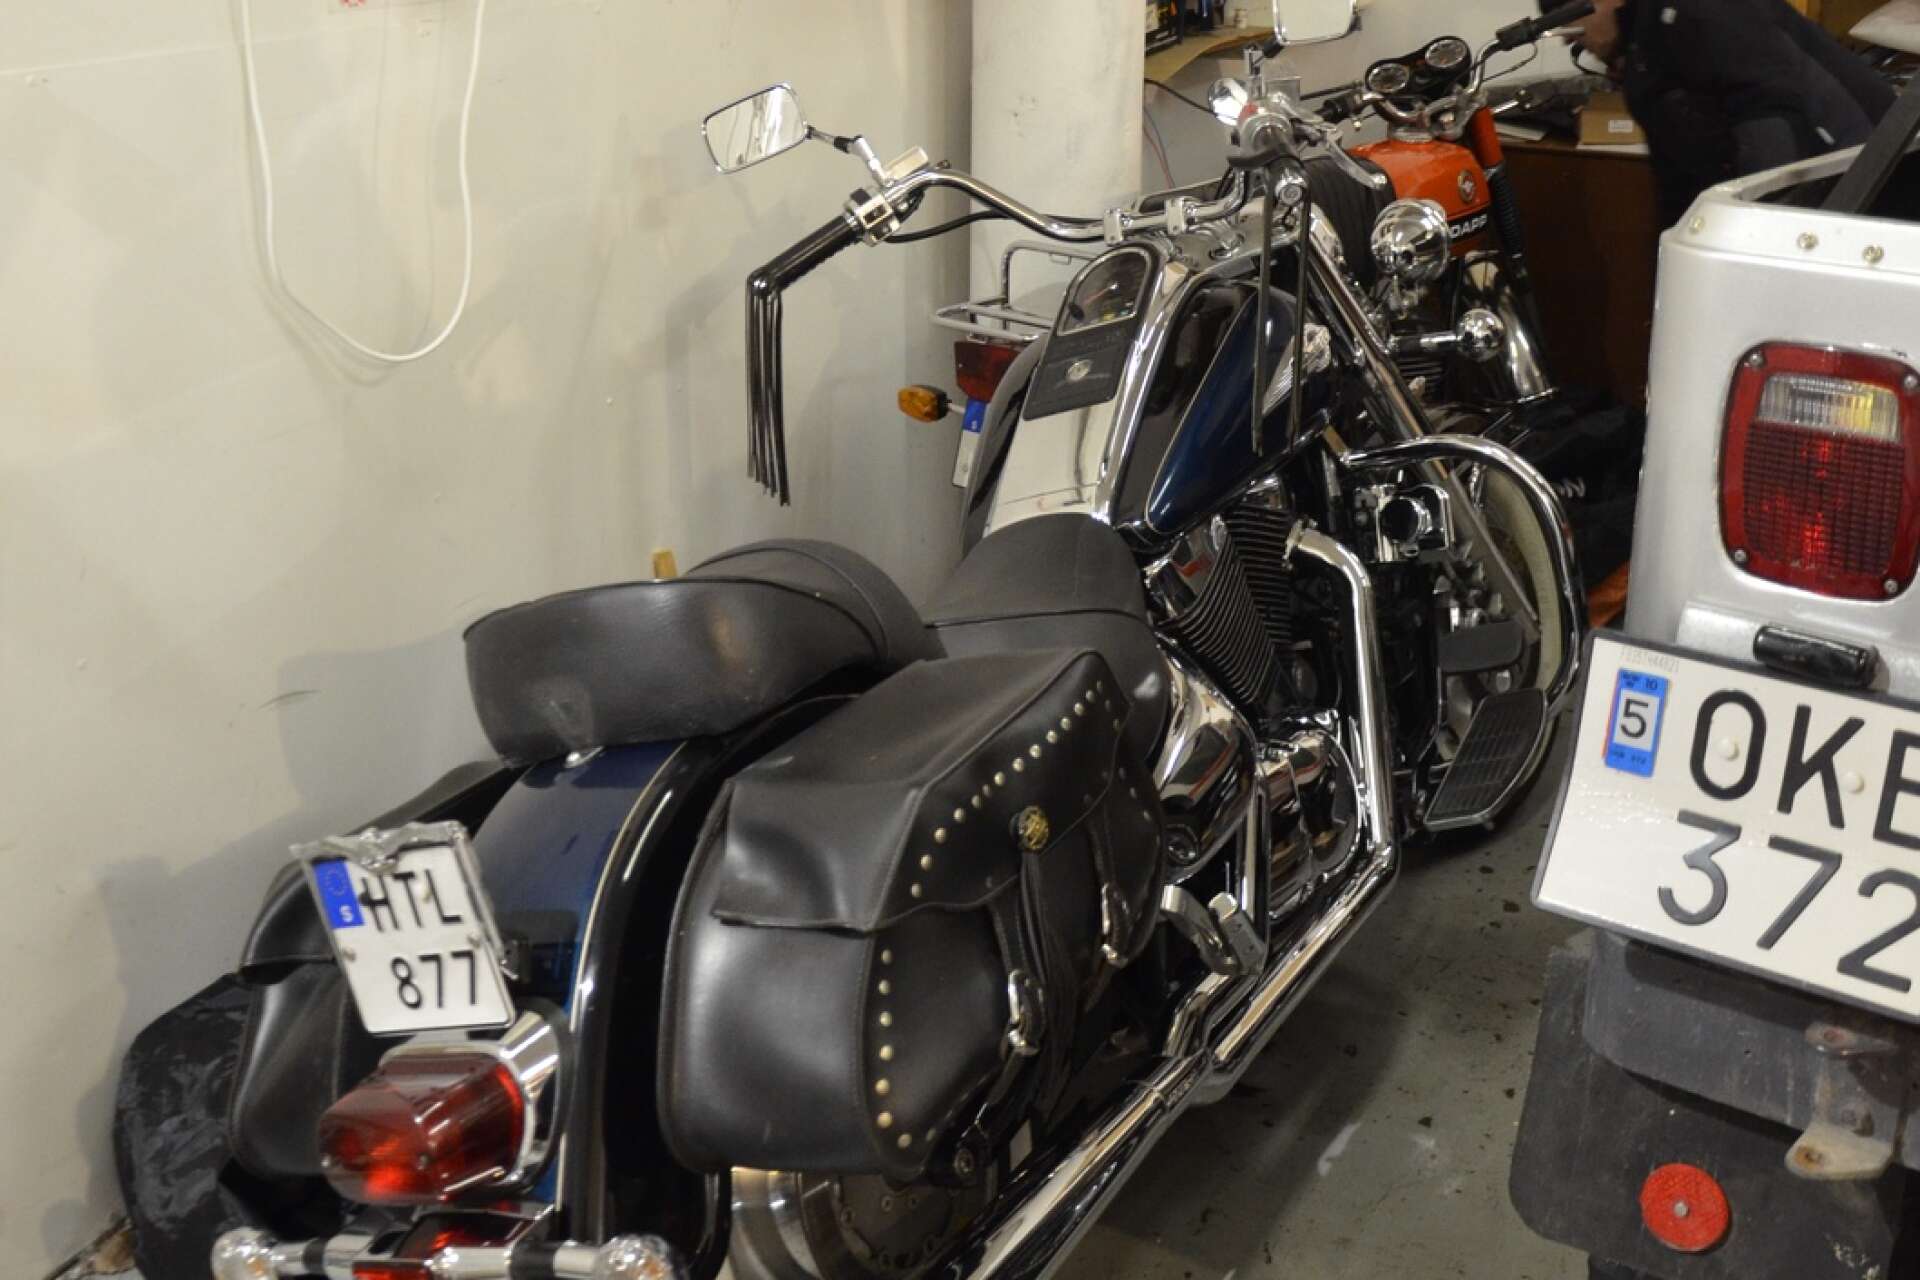 I garaget finns även en moped han mekar med då och då, och en motorcykel han renoverat.